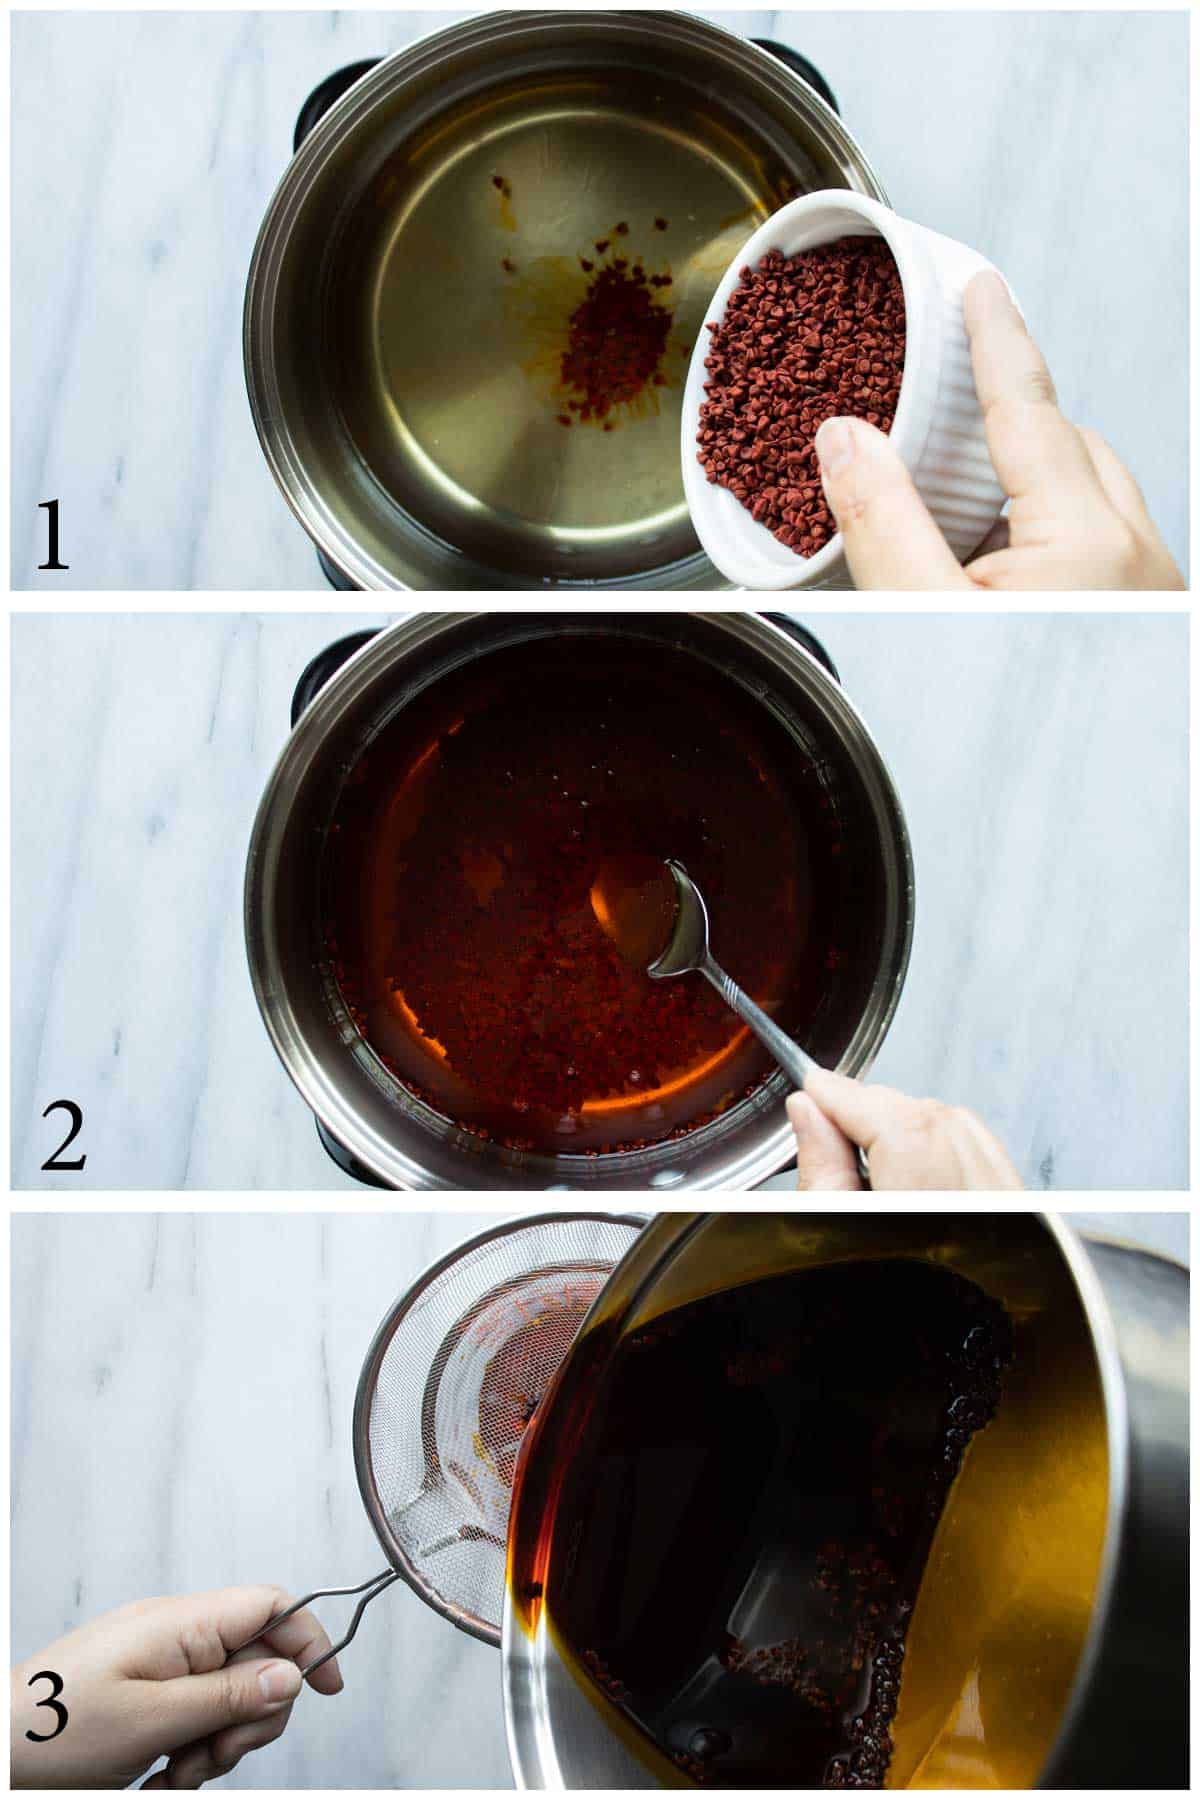 imagenes de pasos de 1 al 3 de como se prepara el aceite de achiote.